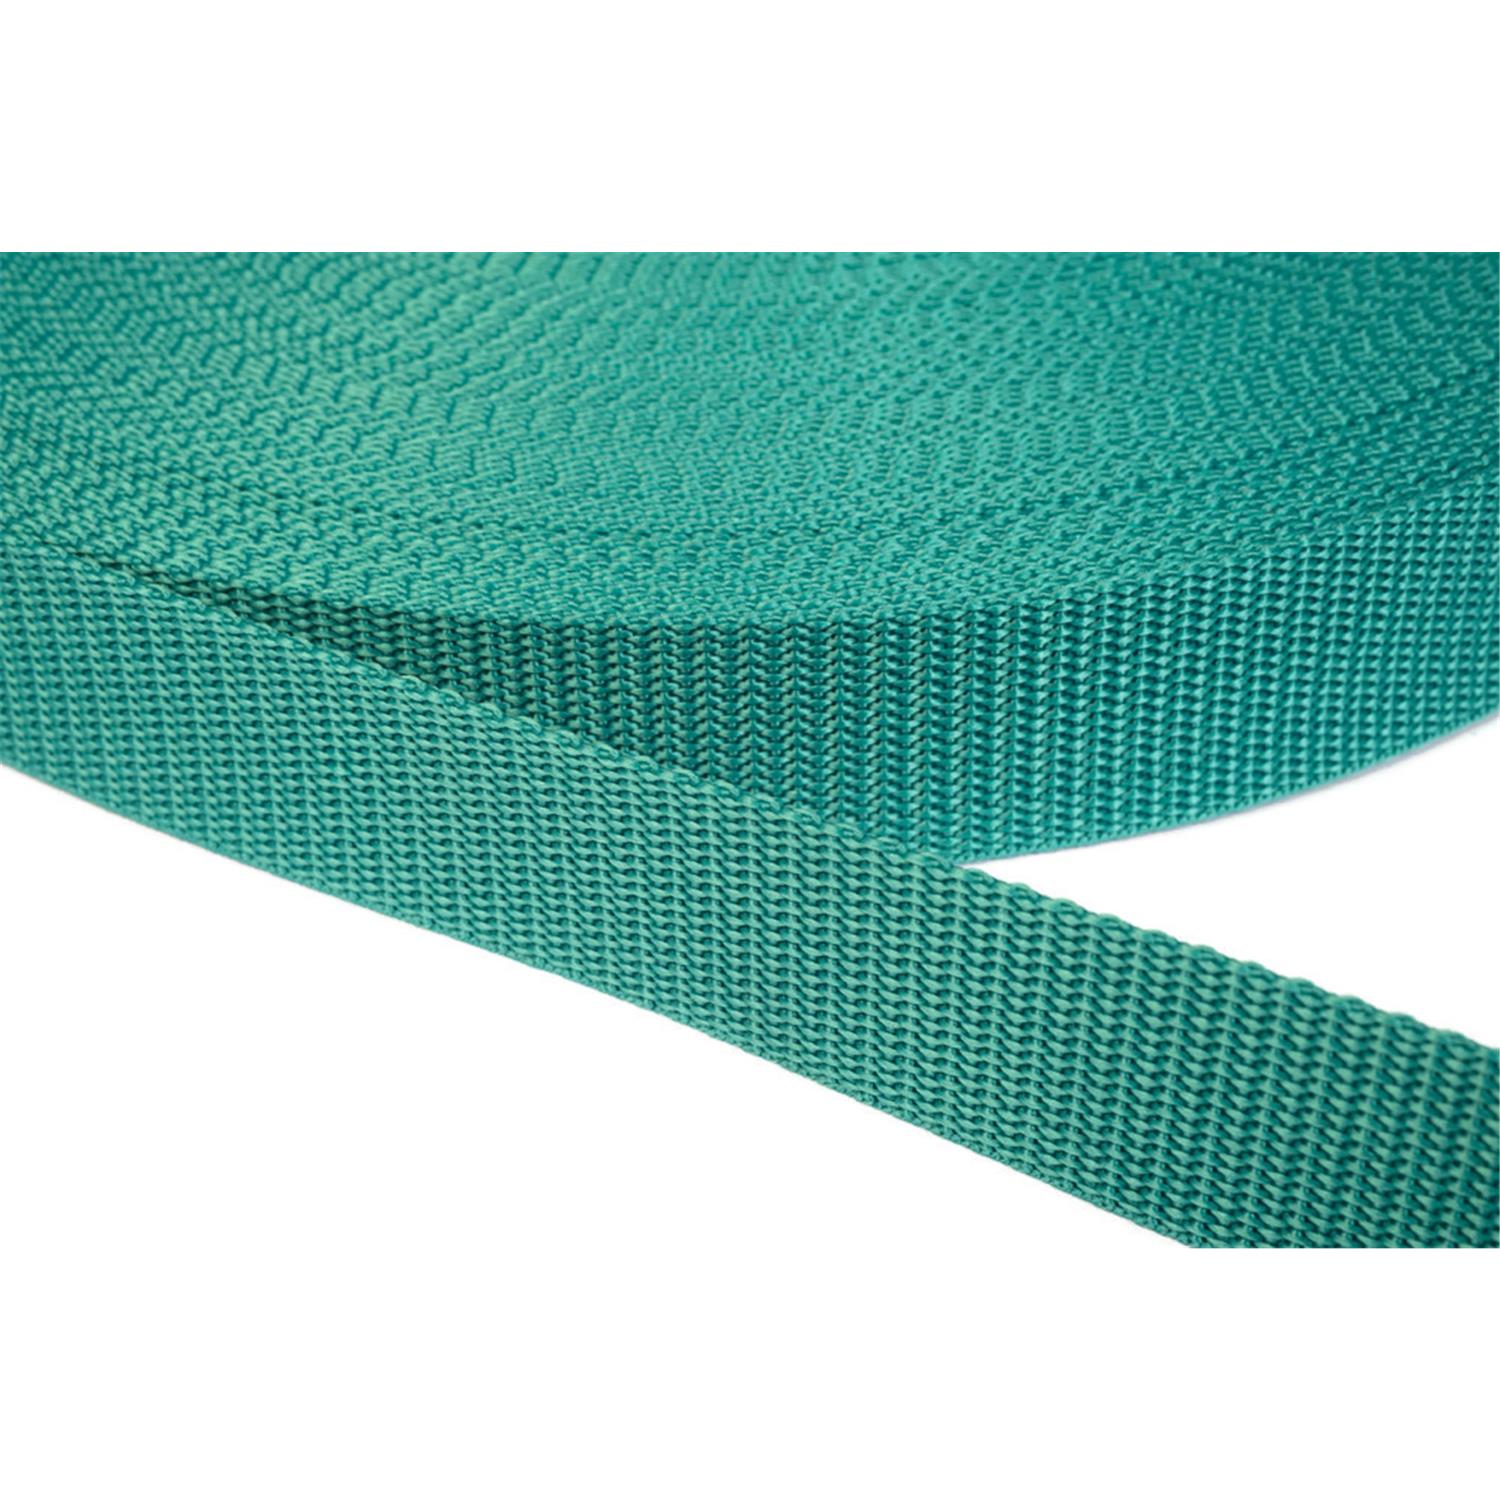 Gurtband 20mm breit aus Polypropylen in 41 Farben 31 - smaragdgrün 12 Meter